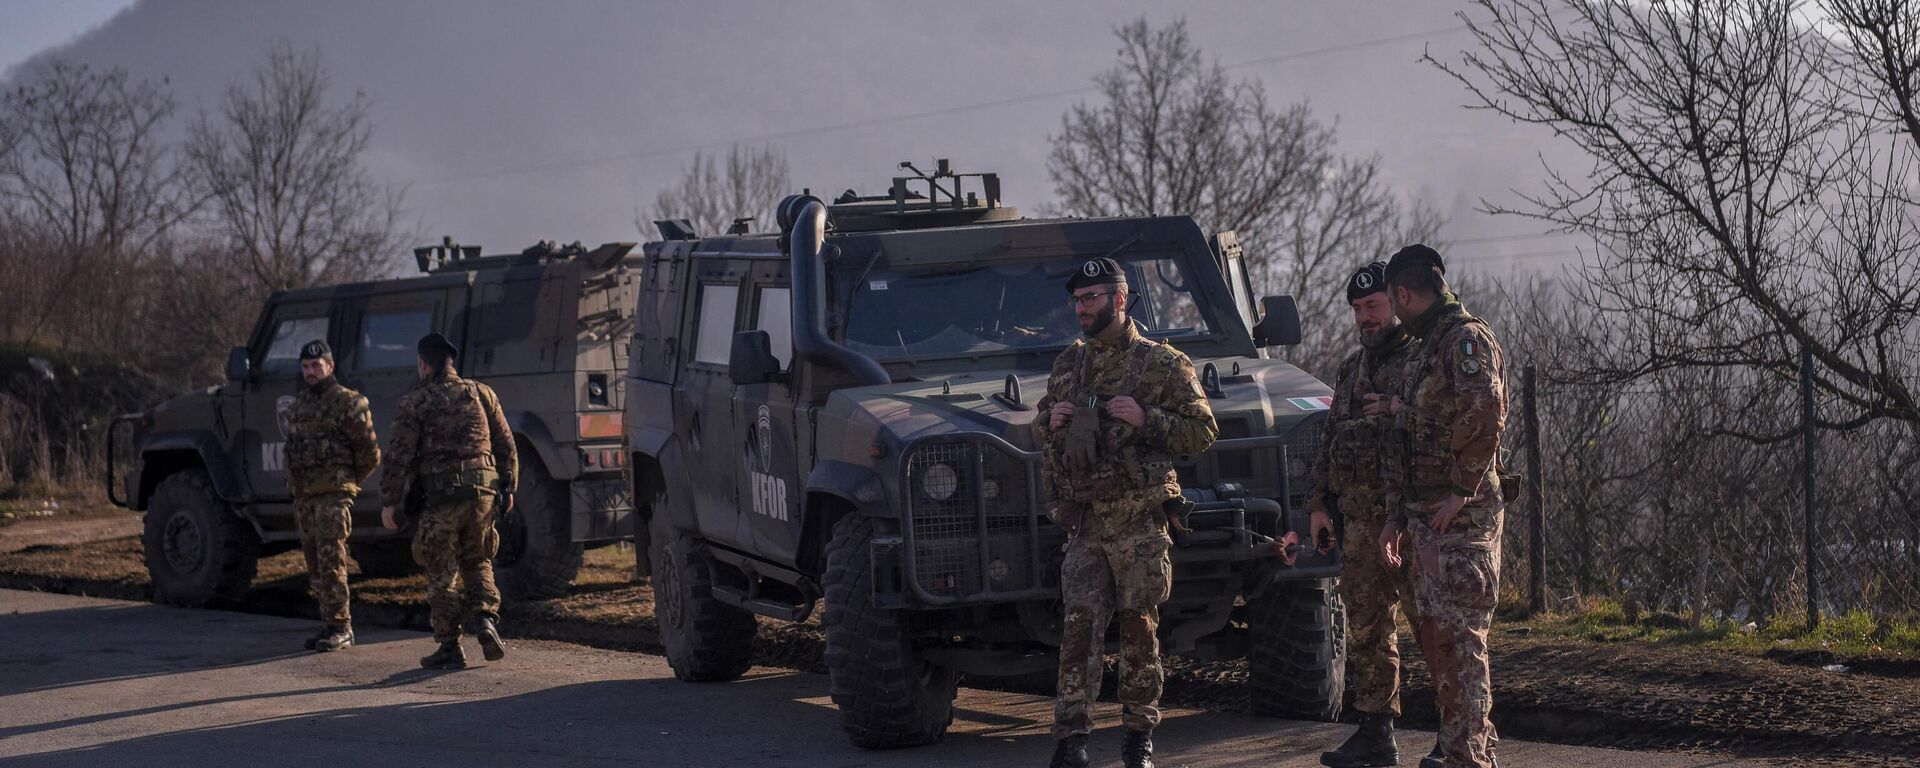 جنود إيطاليون يخدمون في بعثة حفظ السلام الدولية التي يقودها الناتو في كوسوفو بالقرب من طريق محصن بالشاحنات من قبل الصرب في قرية روداري بالقرب من بلدة زفيكان، 26 ديسمبر 2022 - سبوتنيك عربي, 1920, 27.05.2023